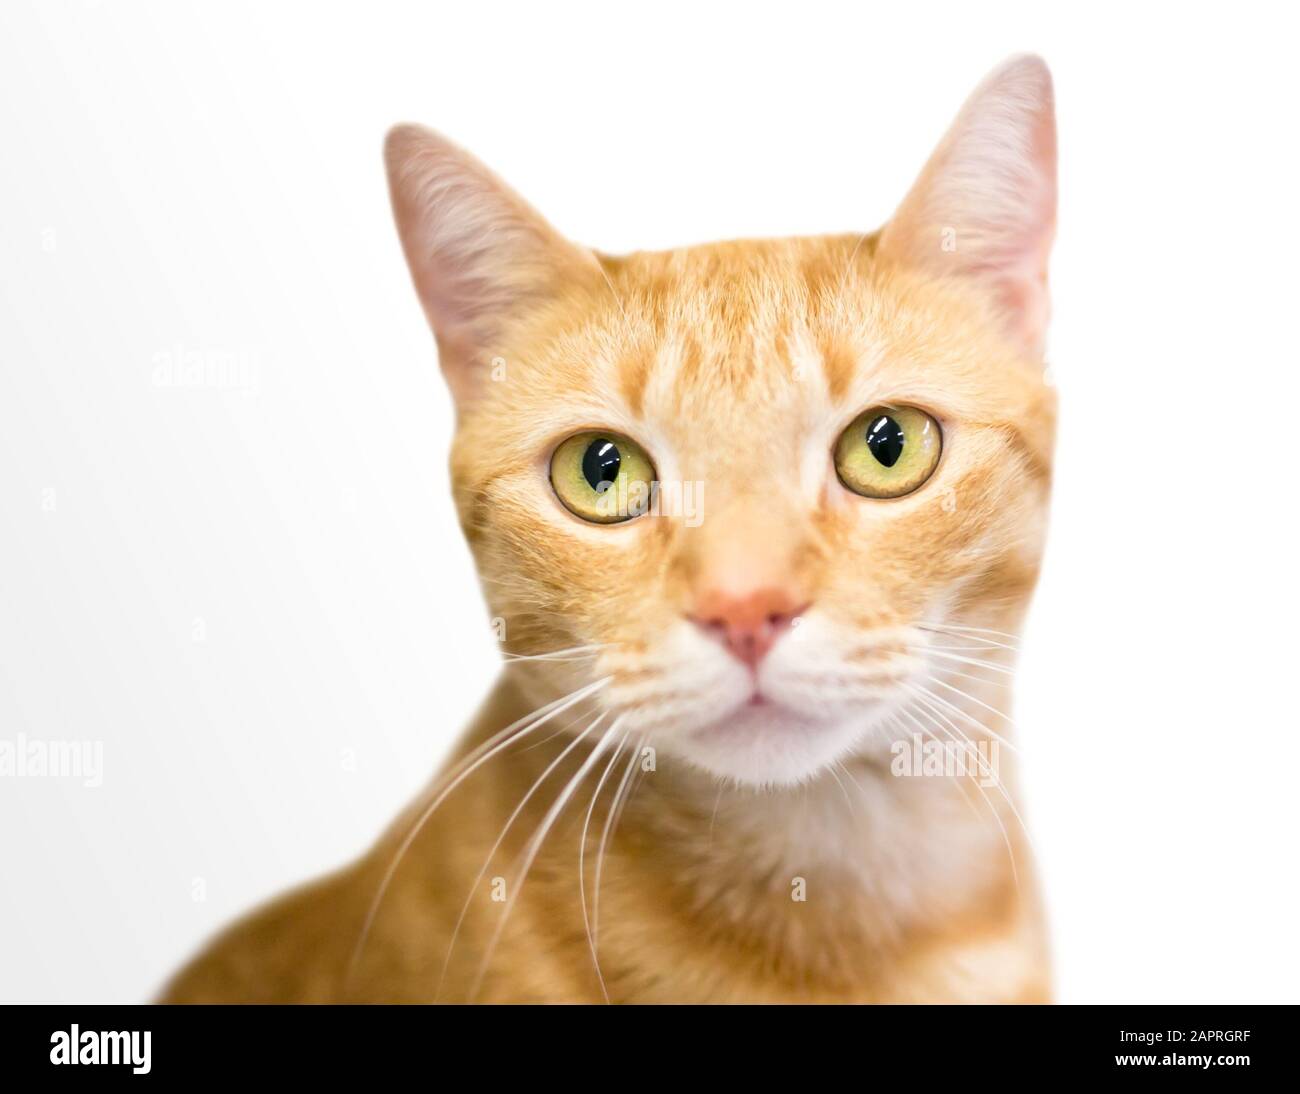 Un chat de shorthair domestique tabby orange avec yeux jaunes Banque D'Images